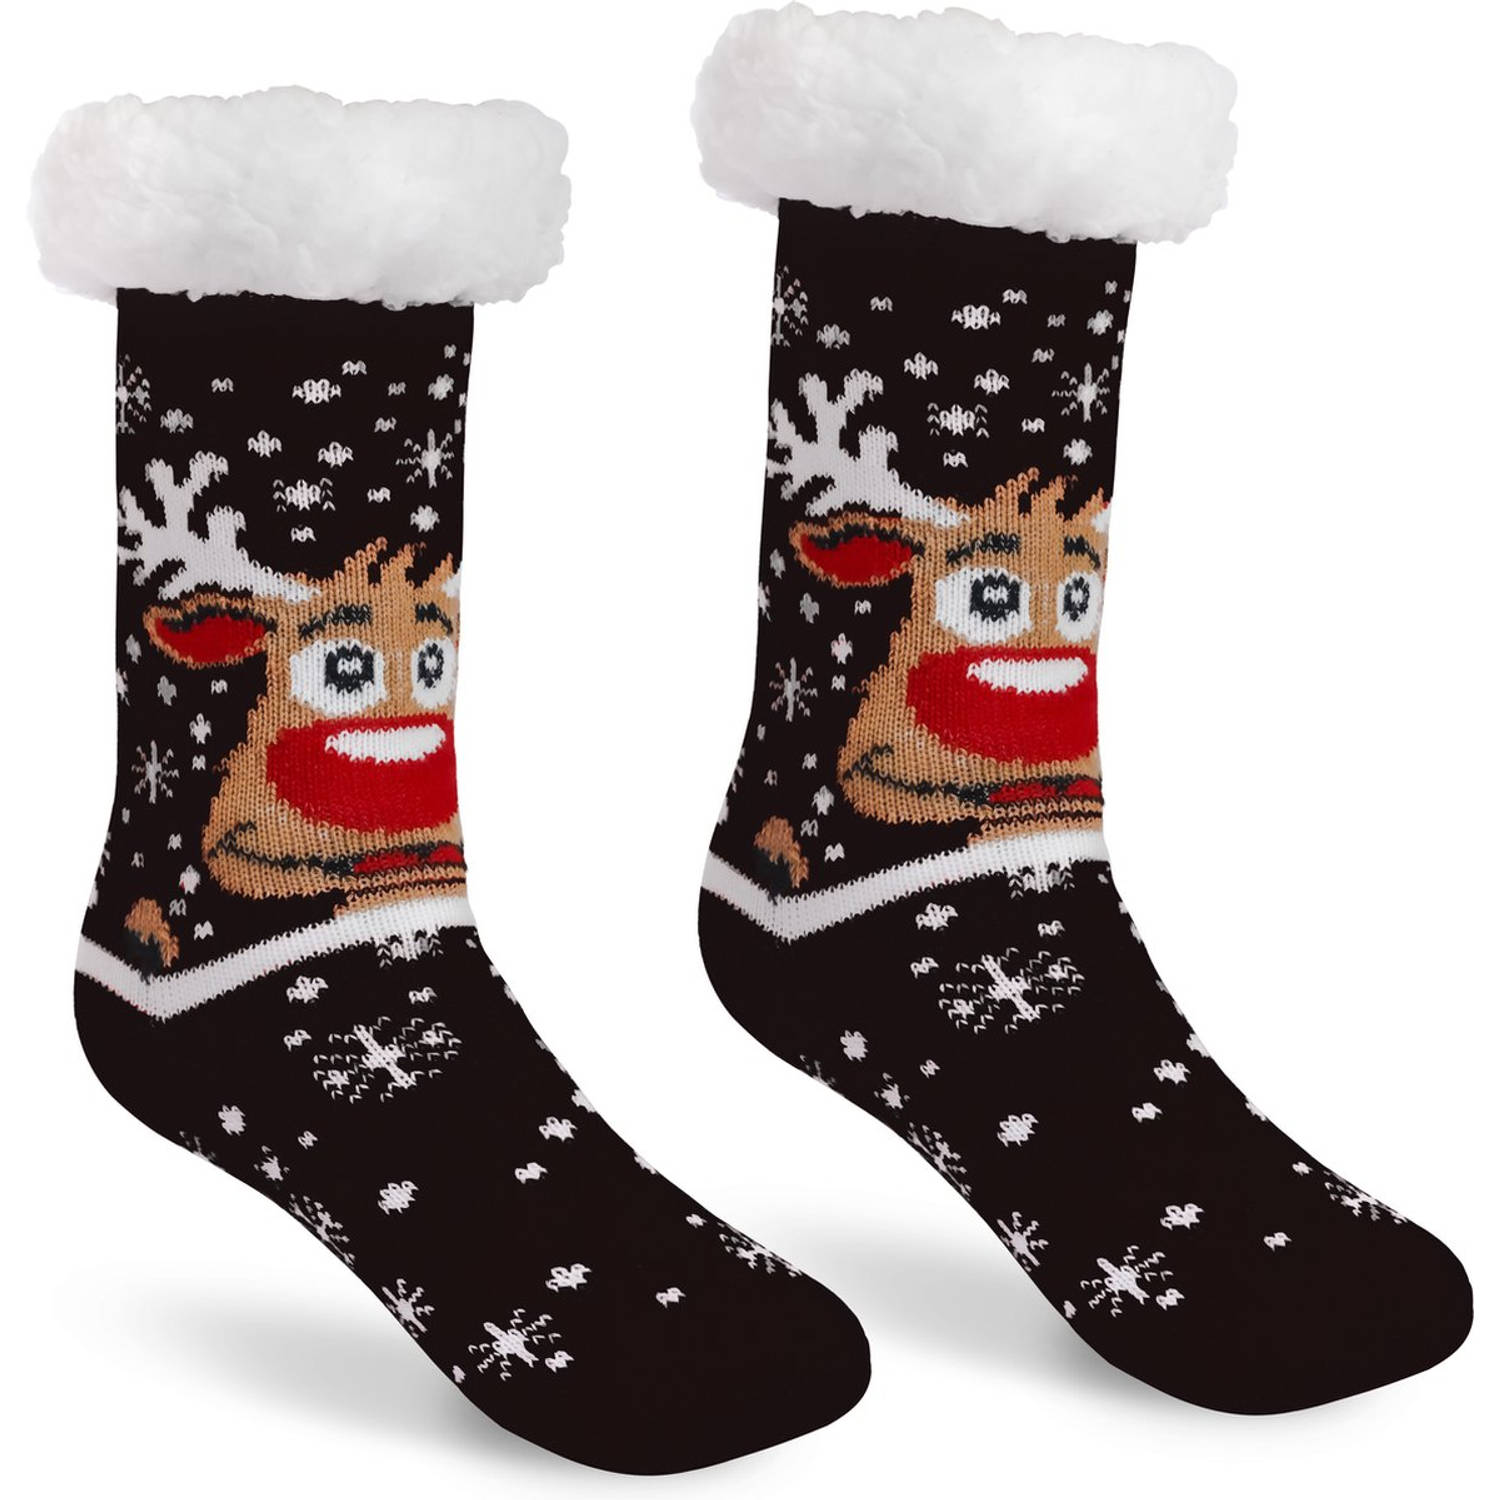 JAP Kerstsokken met anti slip - Rudolf het rendier huissokken - Warme, dikke en fluffy winter sokken - Dames en heren bedsokken - Maat 41-44